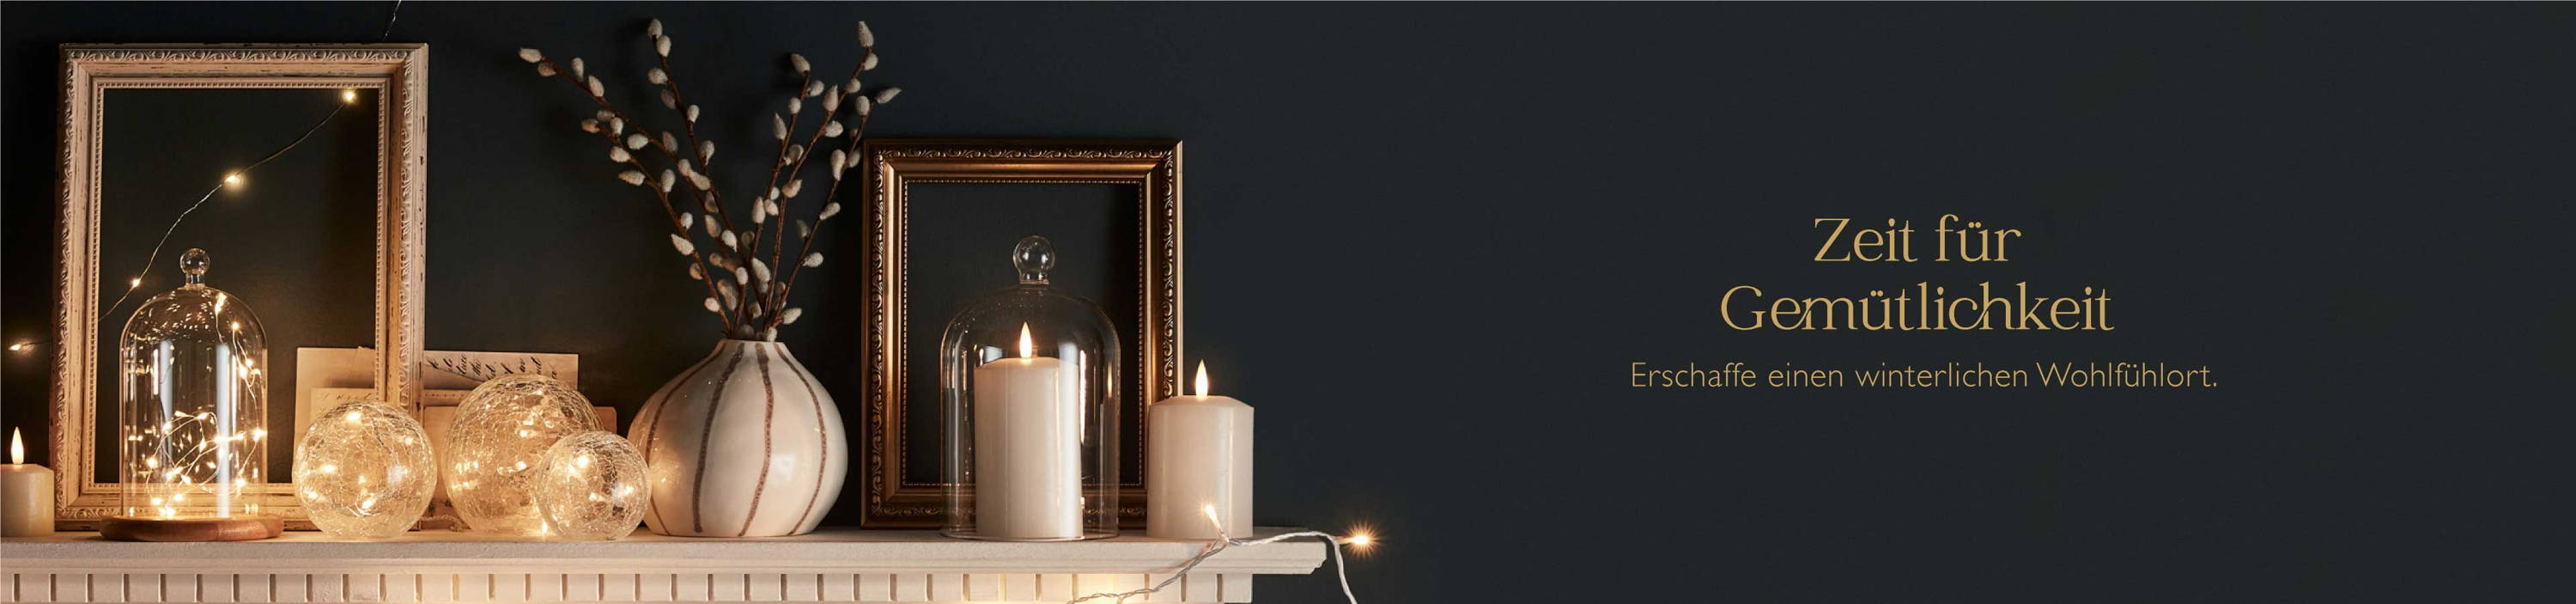 Gemütlich dekorierter Kaminsims mit LED Kerzen, Glasglocken und  warmweißen Glaskugeln